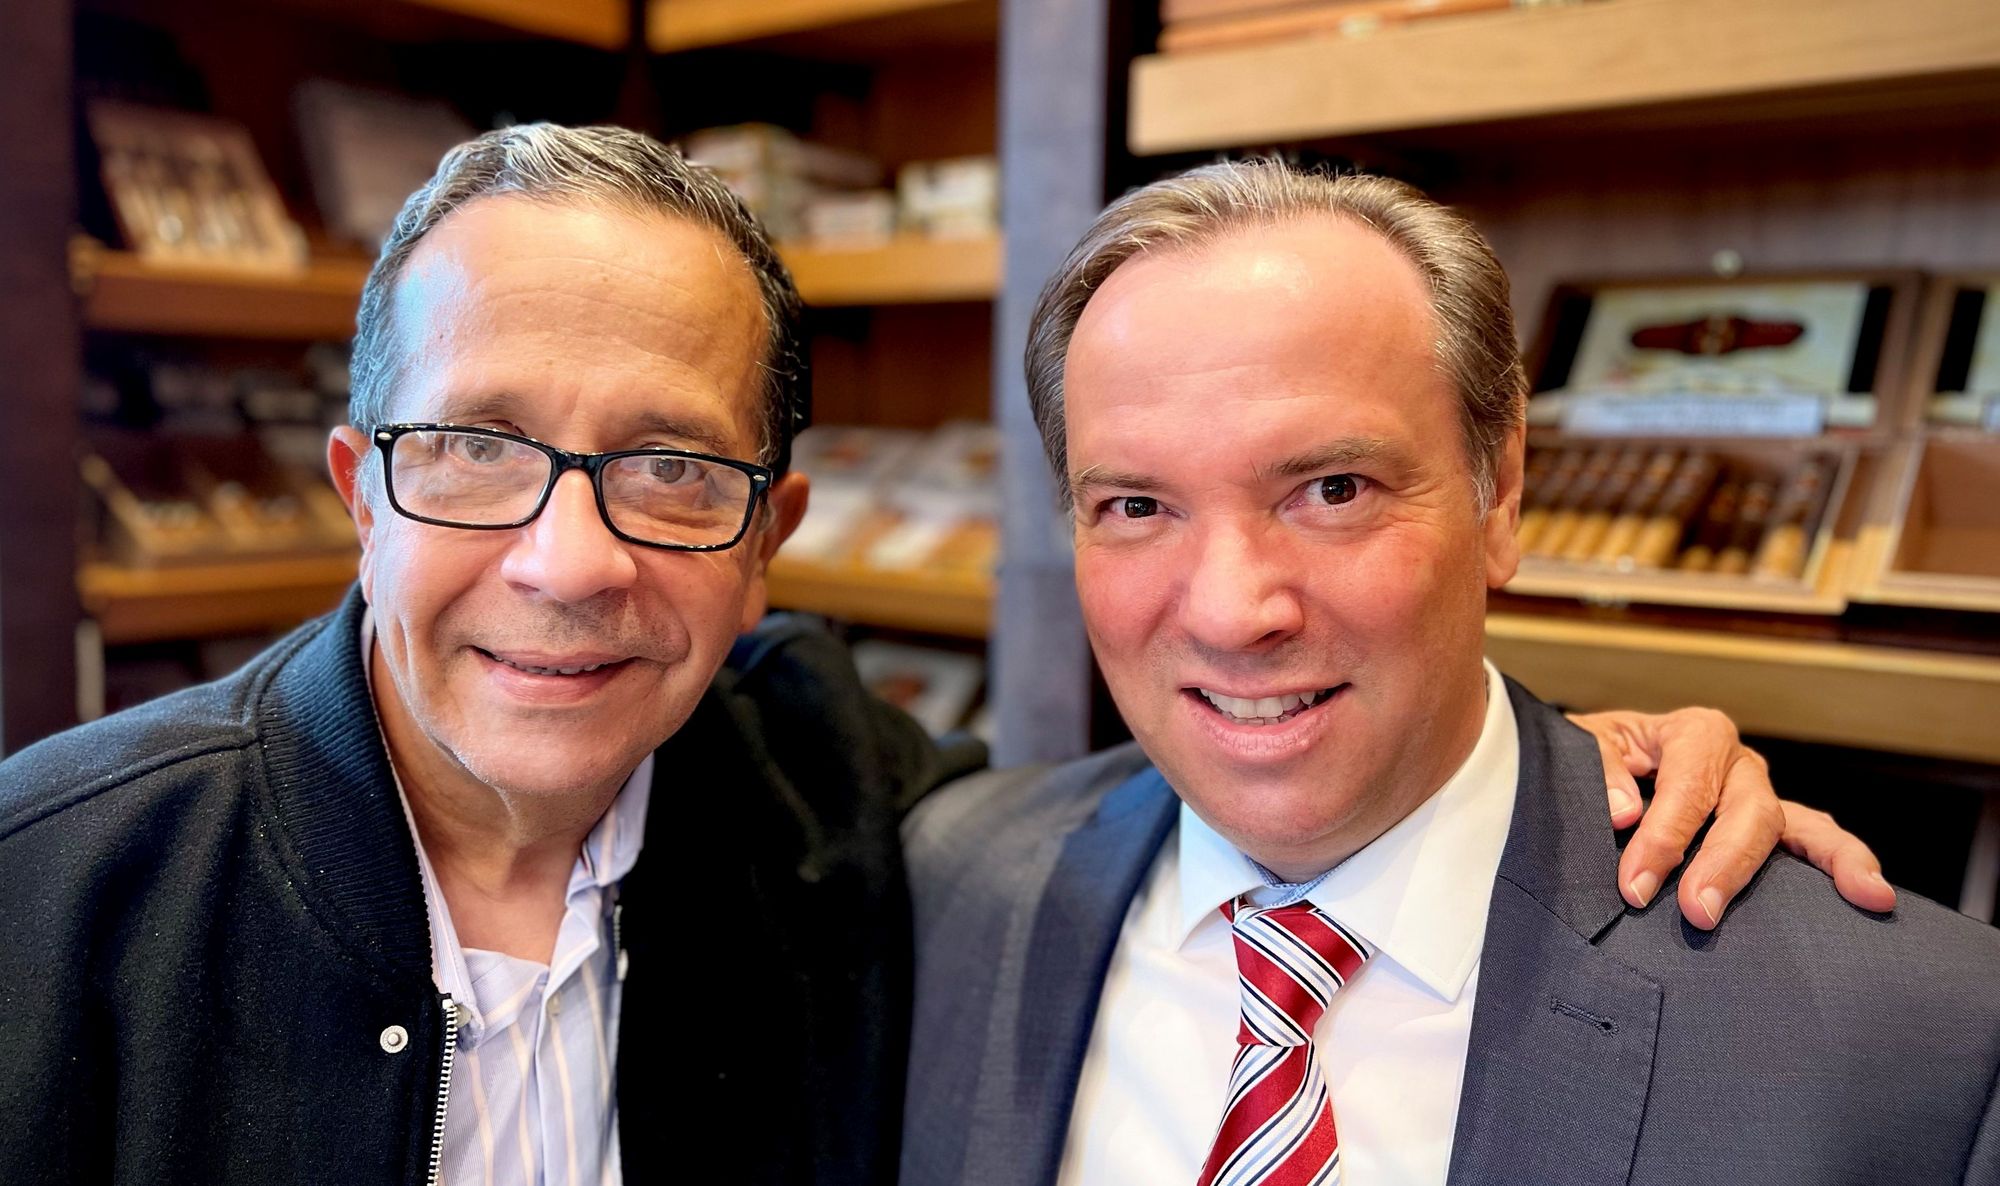 Zigarren-Experten unter sich: José Blanco (links) zu Besuch bei Zechbauer-Geschäftsführer Mirko Pettene.